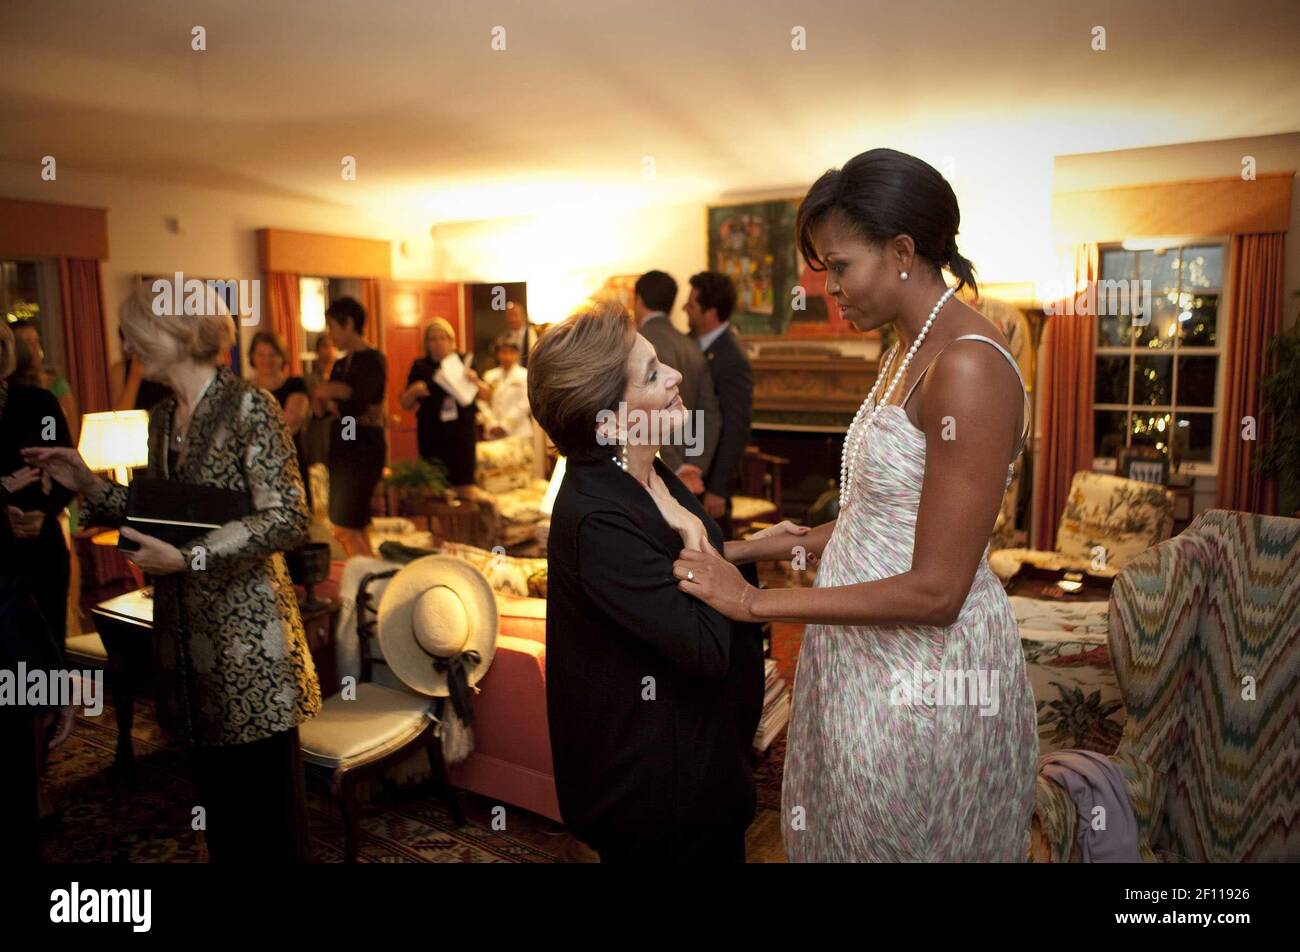 24 de septiembre de 2009 - Pittsburgh, Pensilvania - la primera Dama Michelle Obama co-organiza una cena en la casa de Teresa Heinz para los cónyuges de los G20 líderes en Pittsburgh, jueves, 24 de septiembre de 2009. Crédito de la Foto: Lawrence Jackson/Casa Blanca/Sipa Press/0909251731 Foto de stock